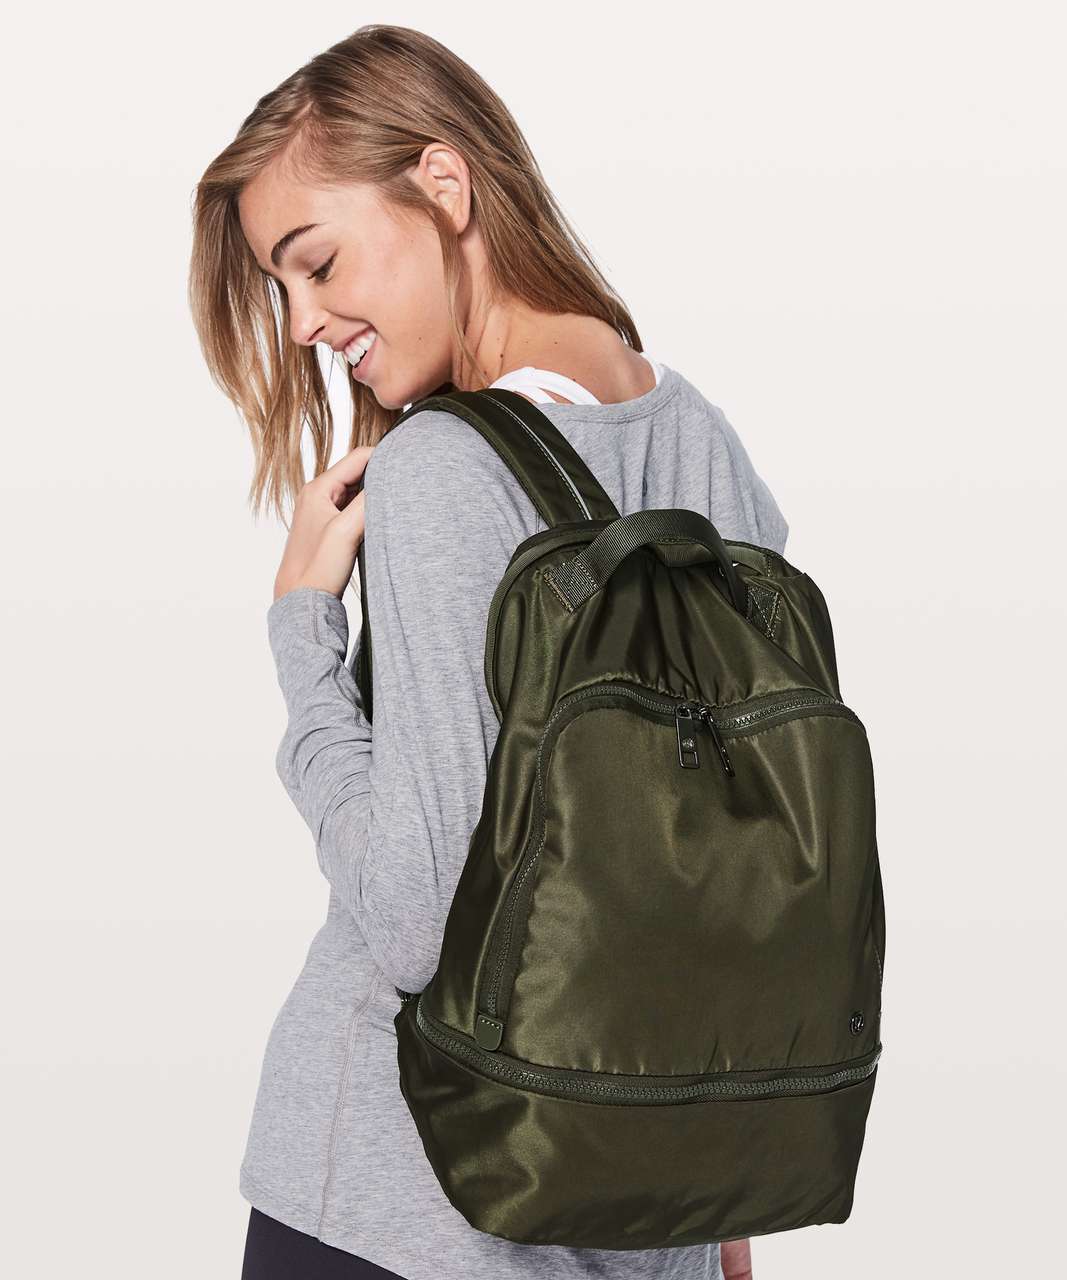 lululemon olive green backpack